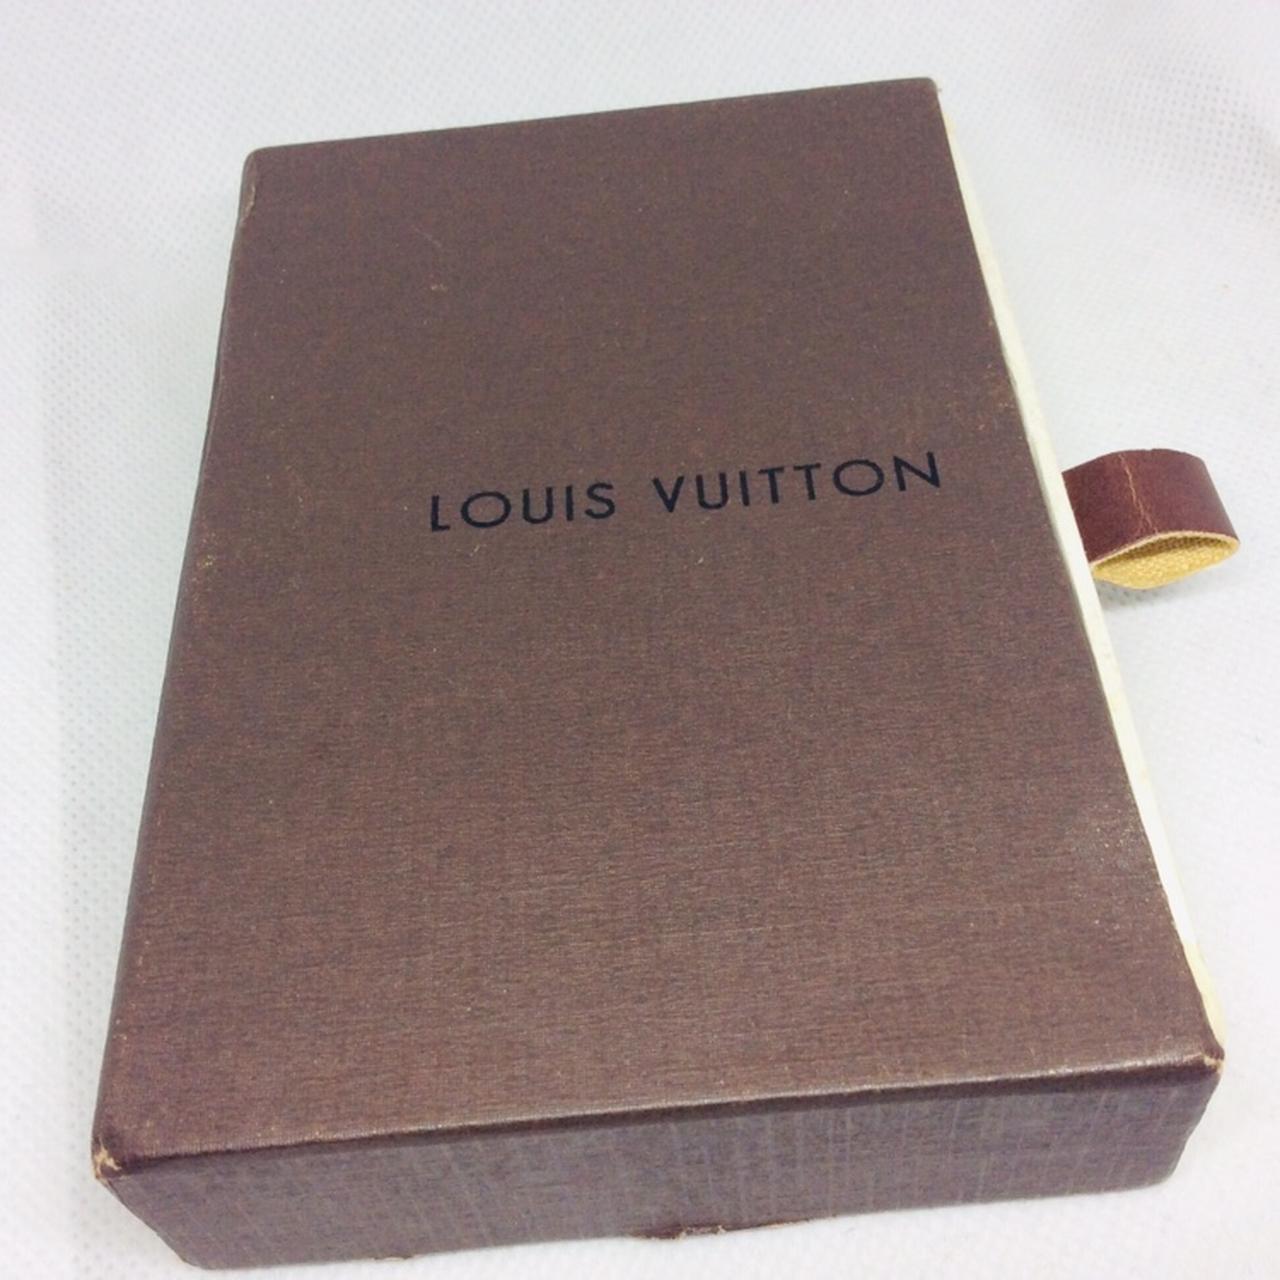 Louis Vuitton, Accessories, Louis Vuitton Wallet Box